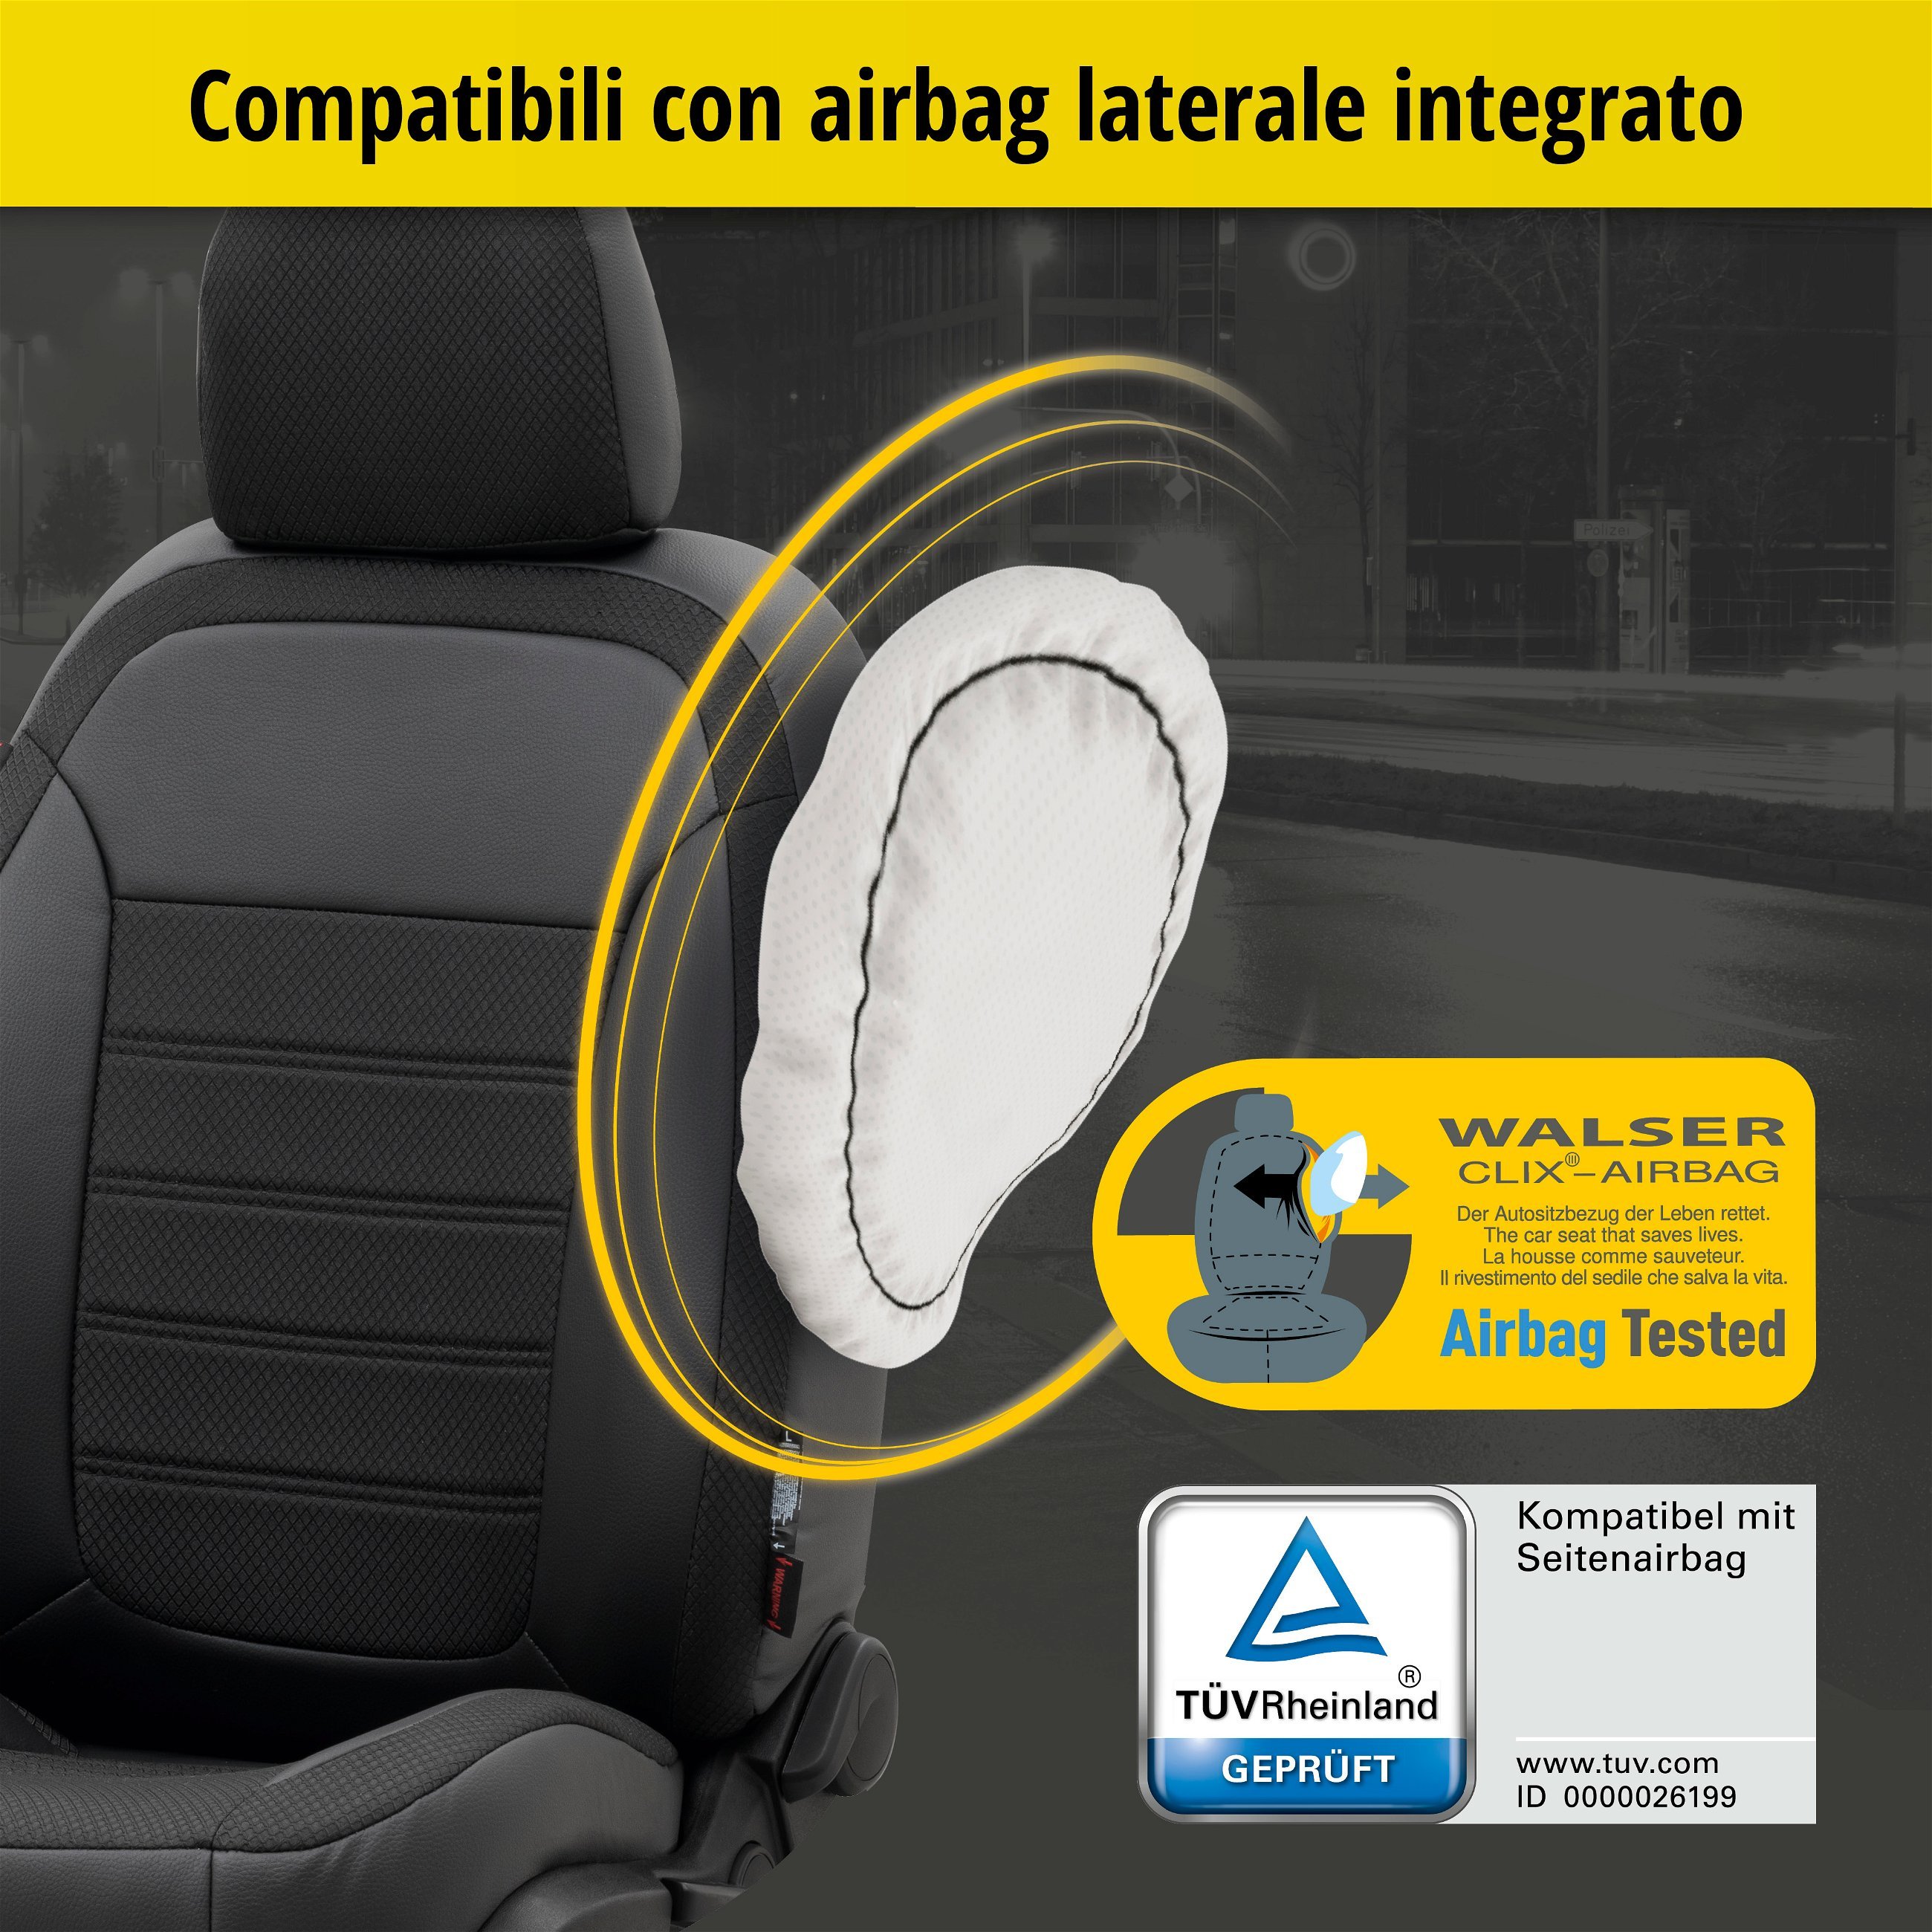 Coprisedili Aversa per Seat Ateca 04/2016-Oggi, 2 coprisedili singoli per sedili sportivi